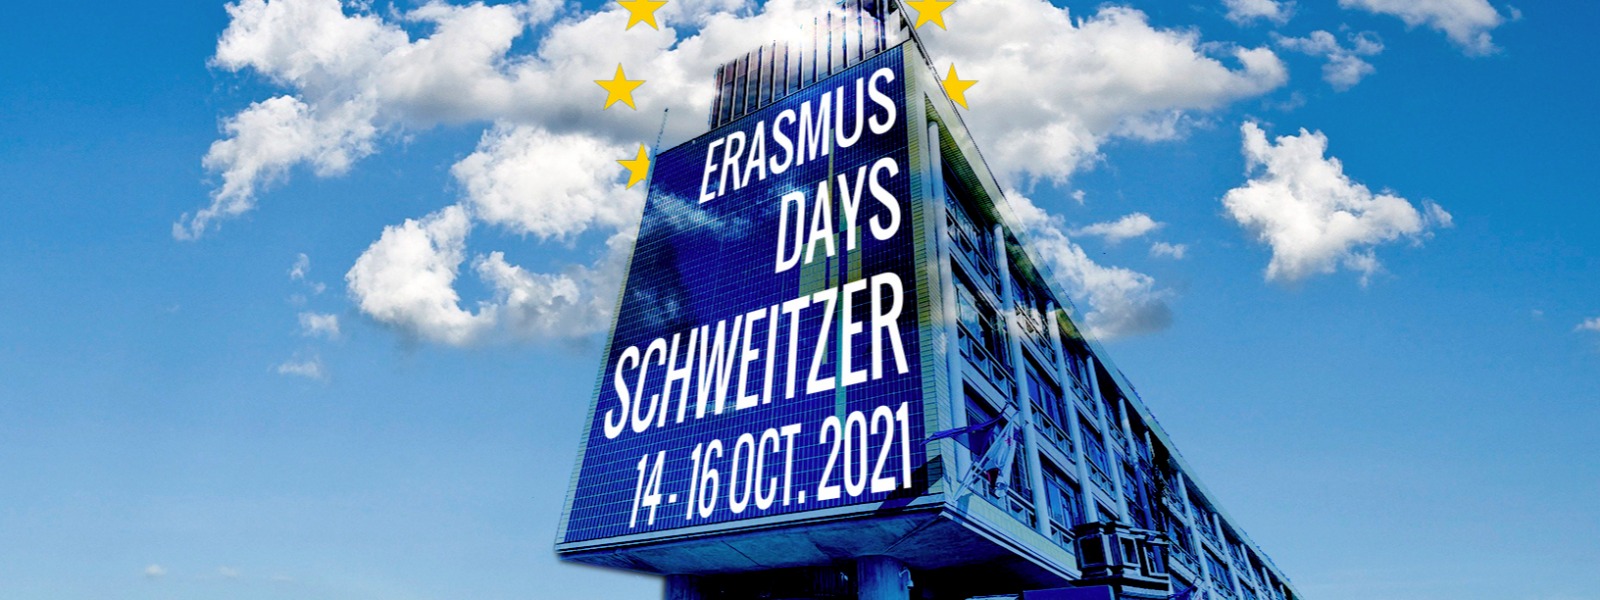 Erasmus Days Lycée Schweitzer 2021